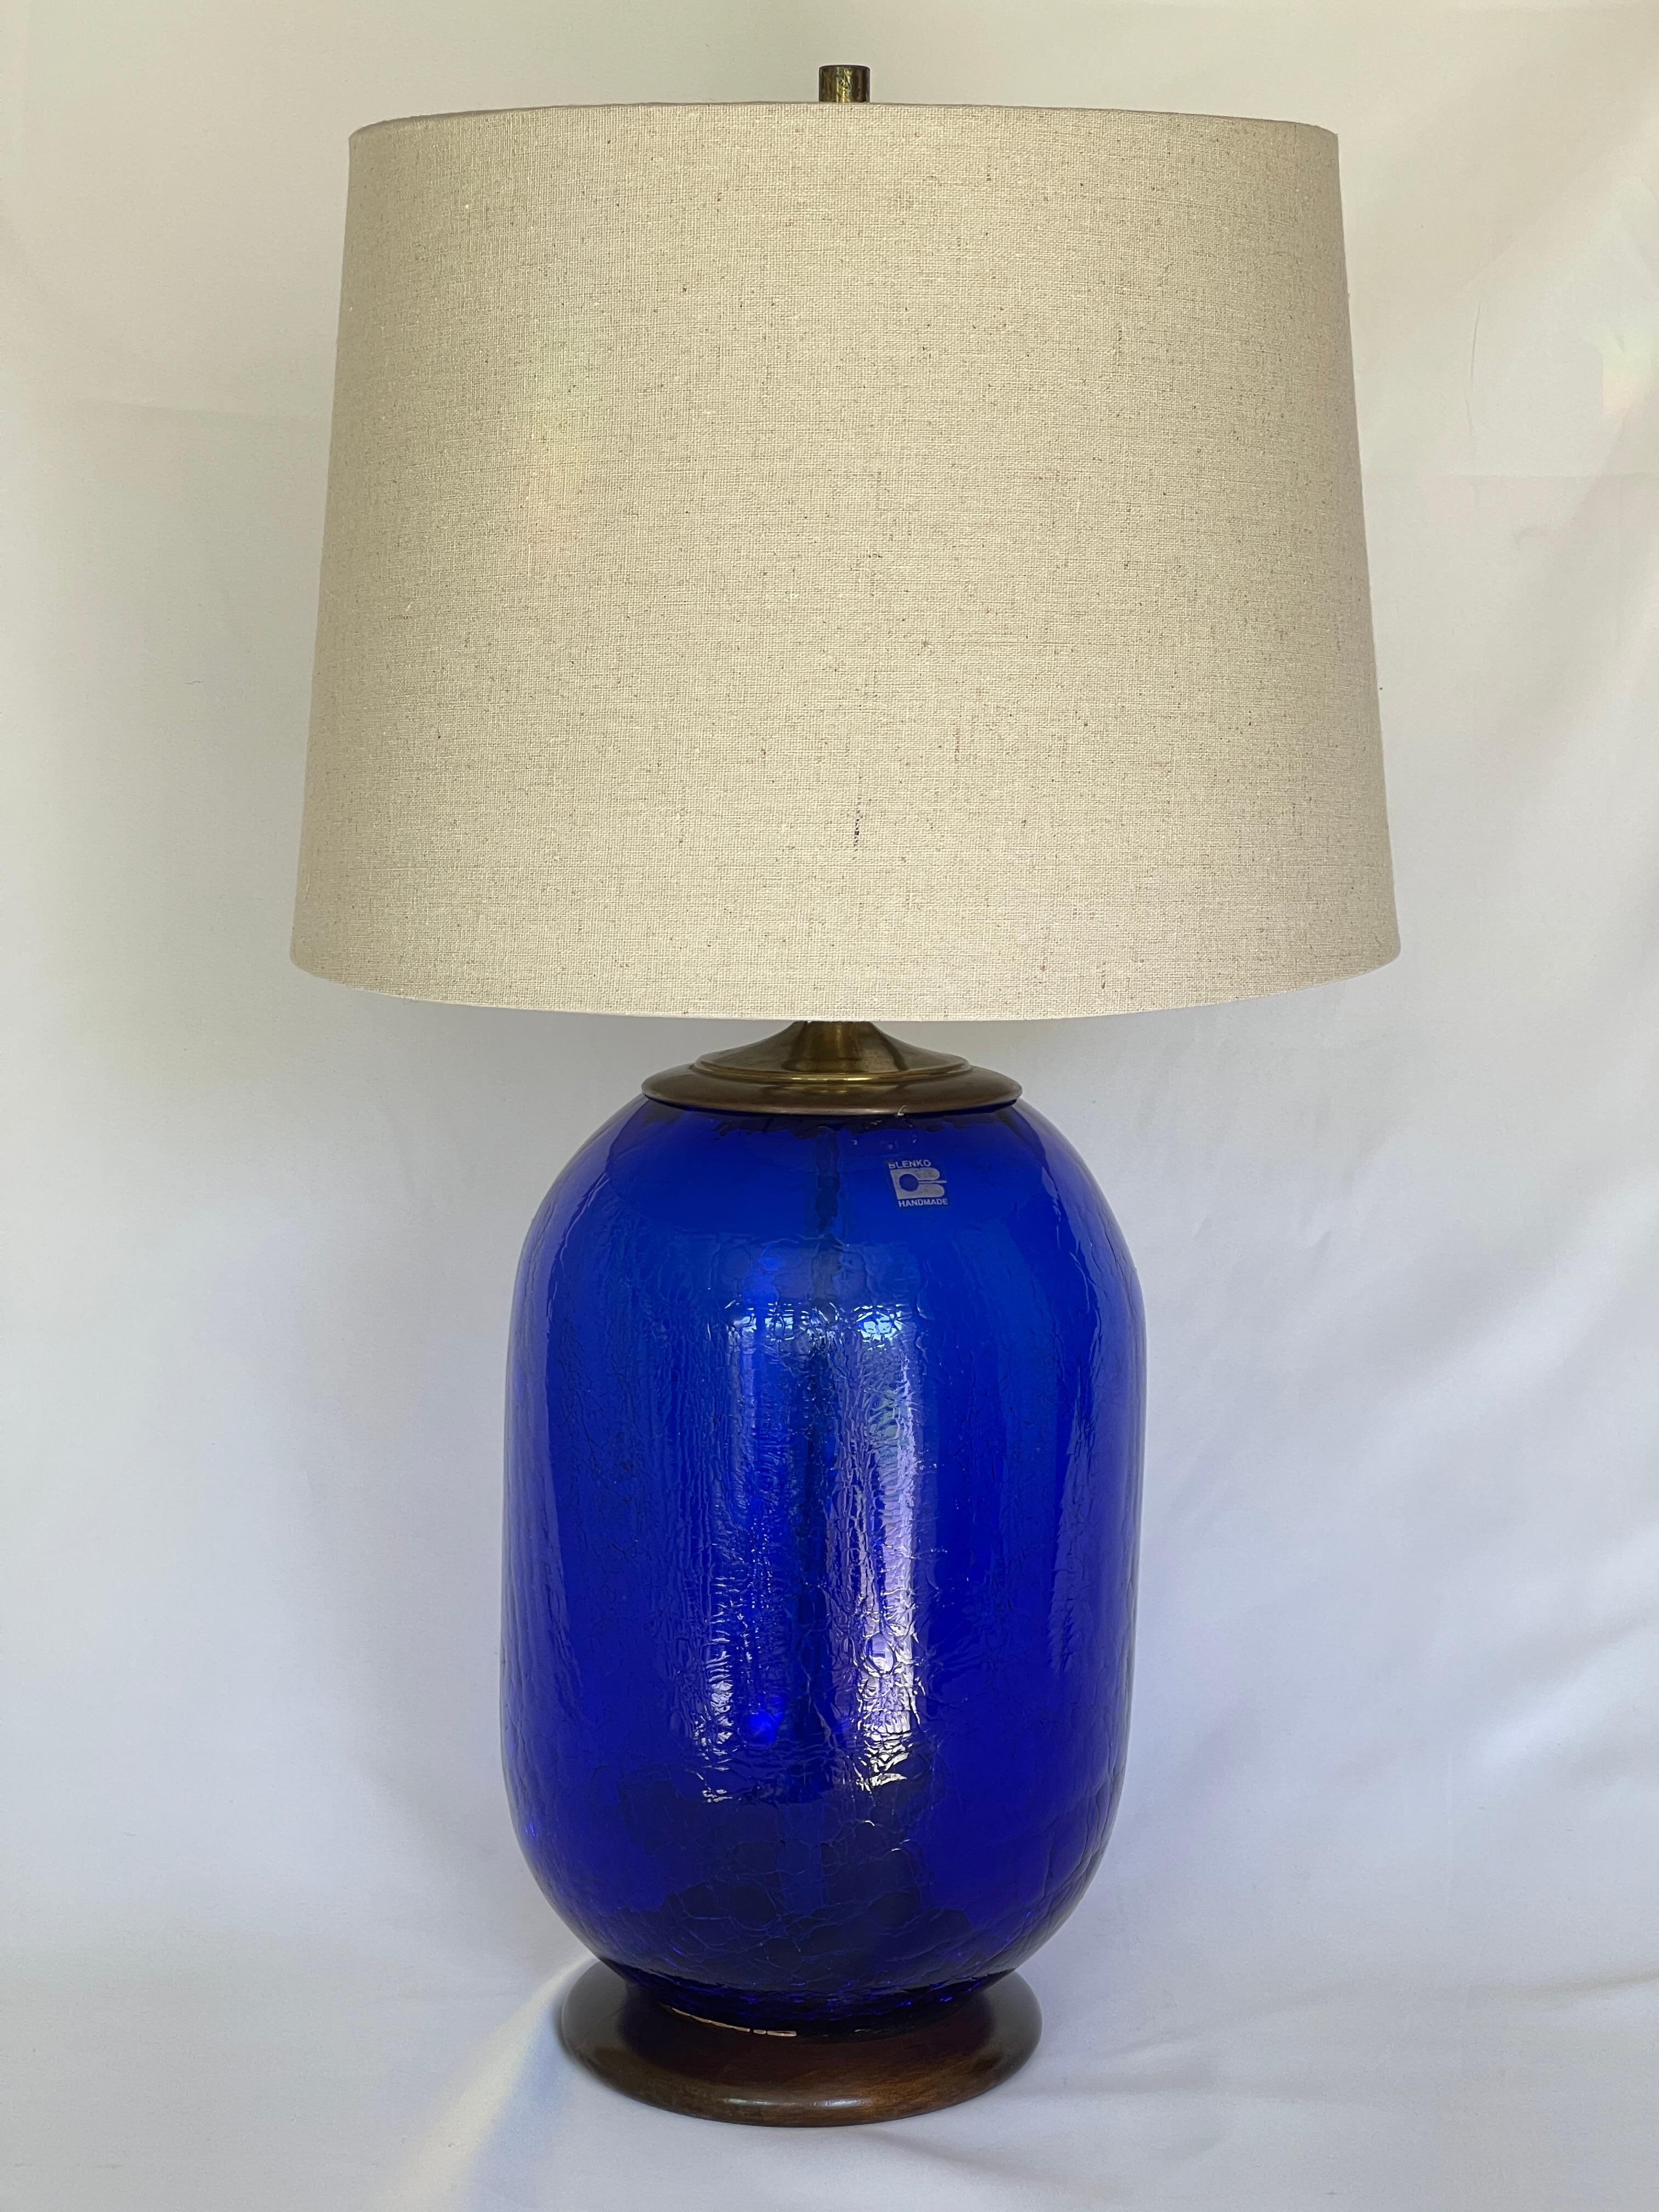 Blenko 1980's craqueliertes blaues Glas Fass Form Lampe mit runden Nussbaum Basis.
Die Originalbeschläge sind mit einer Messingkappe und einer verstellbaren Harfe versehen, die sich an verschiedene Höhen und Lampenschirmgrößen anpassen lässt. Schirm